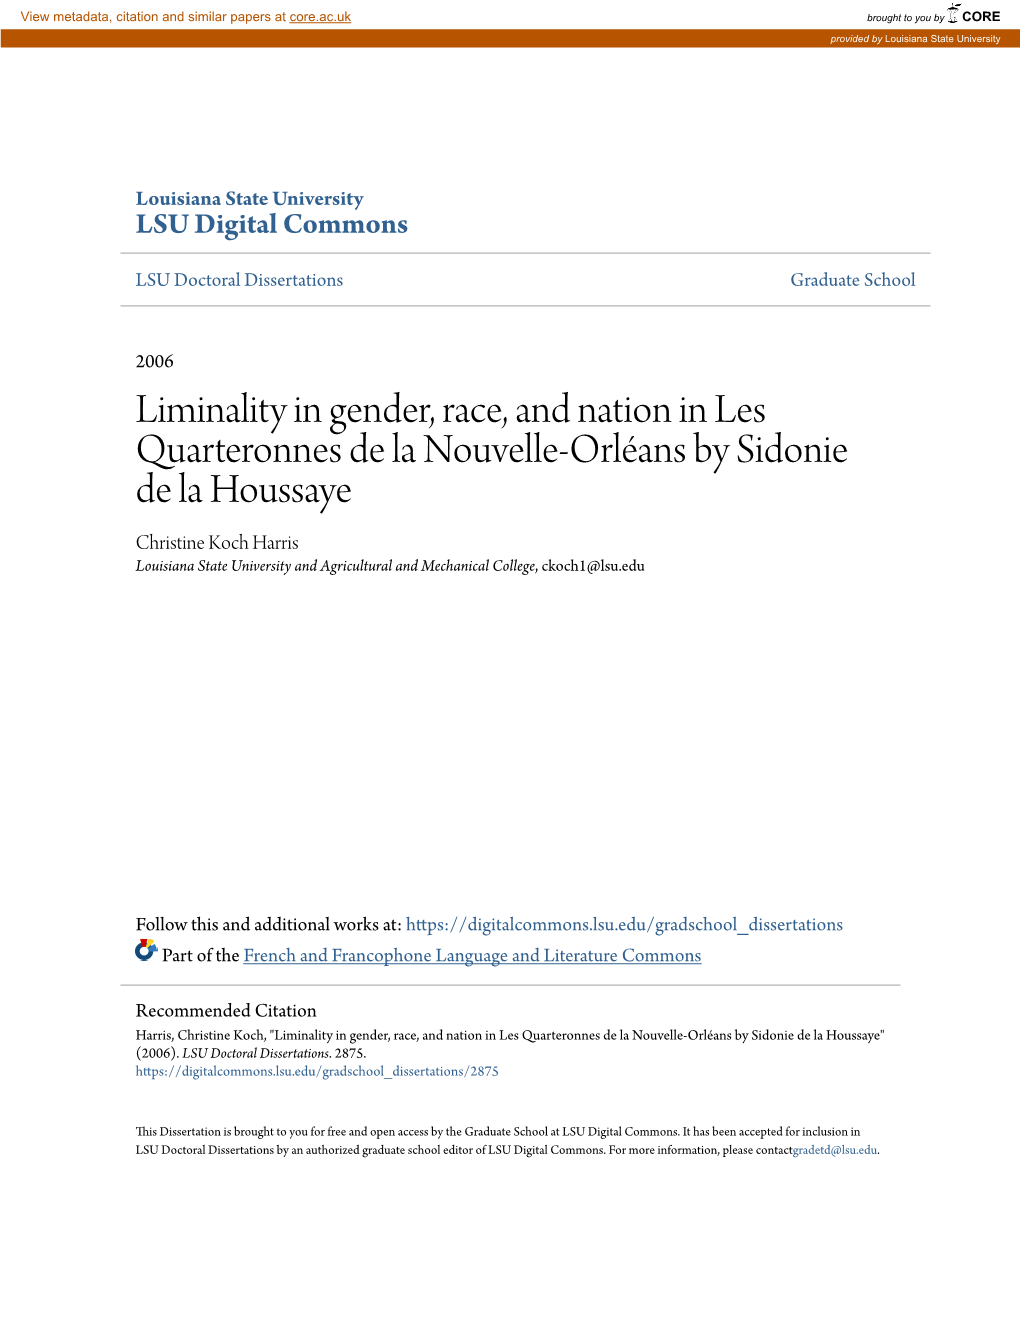 Liminality in Gender, Race, and Nation in Les Quarteronnes De La Nouvelle